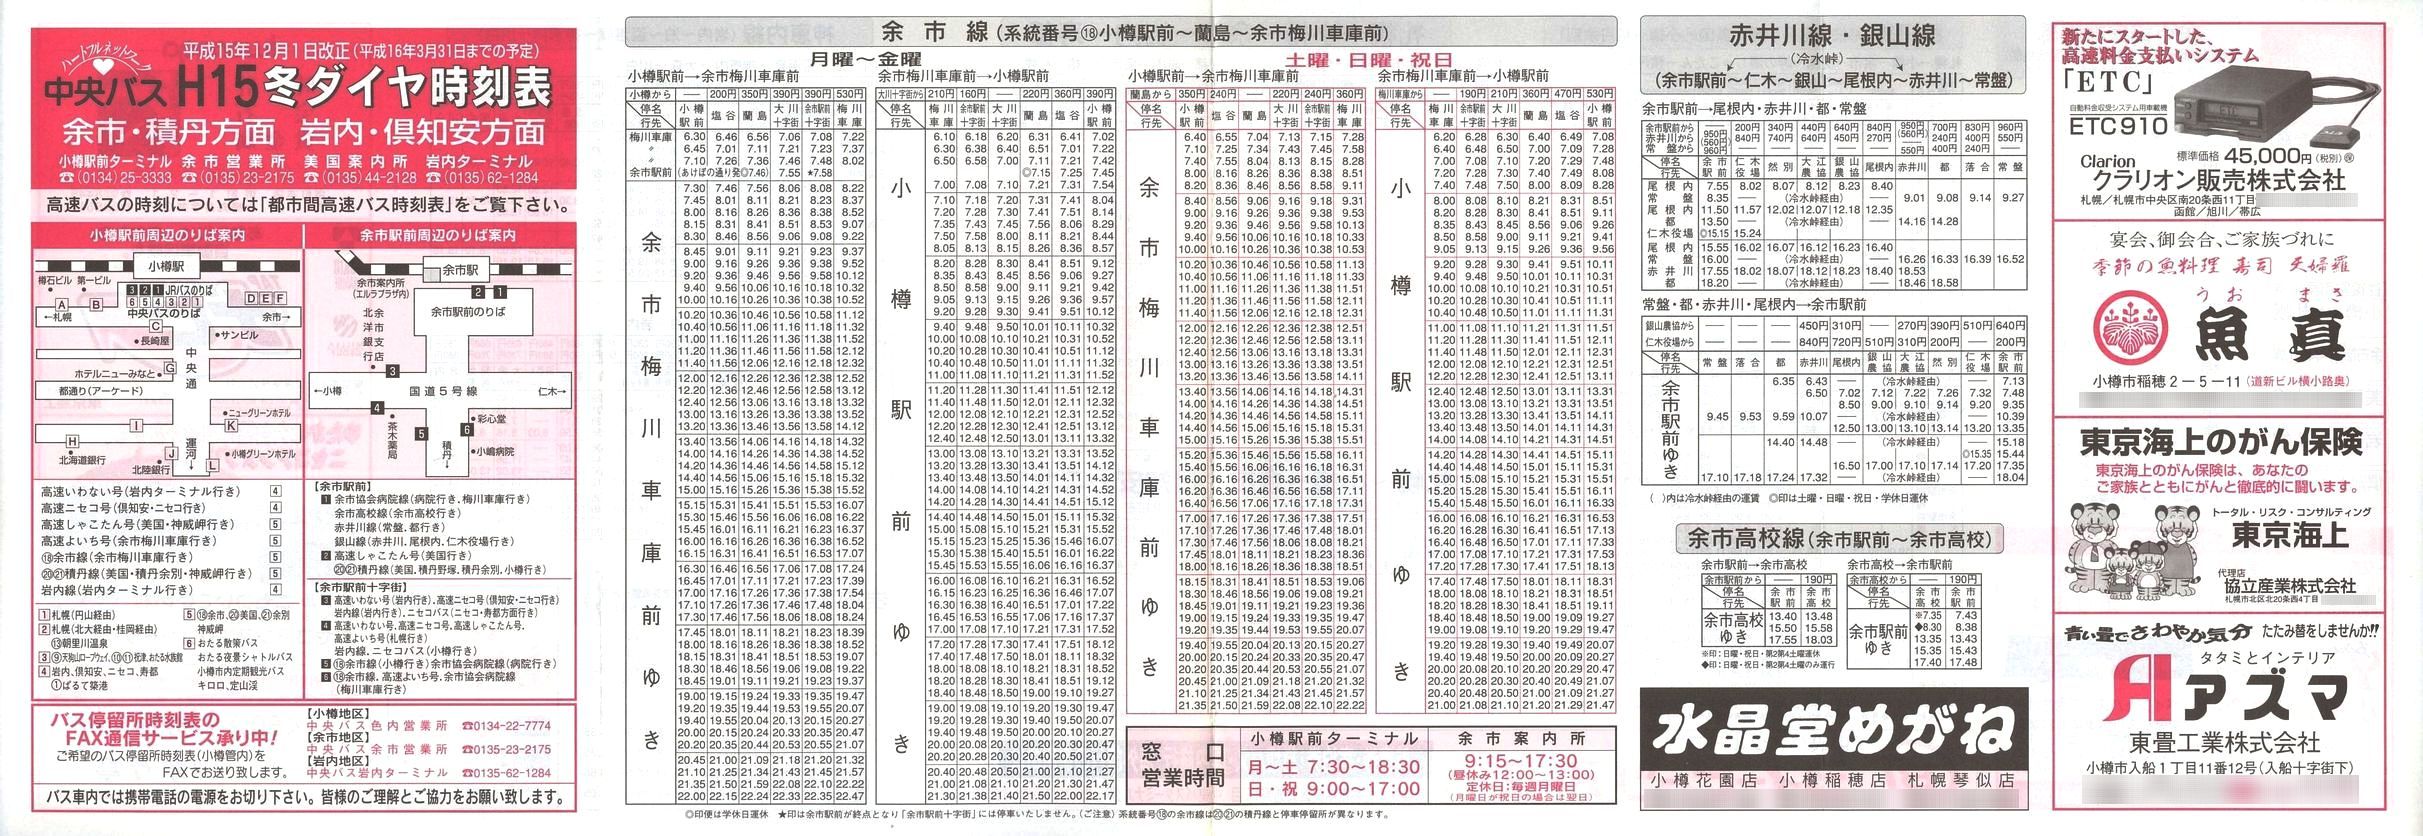 2003-12-01改正_北海道中央バス(小樽)_余市・積丹・岩内・倶知安方面時刻表表面